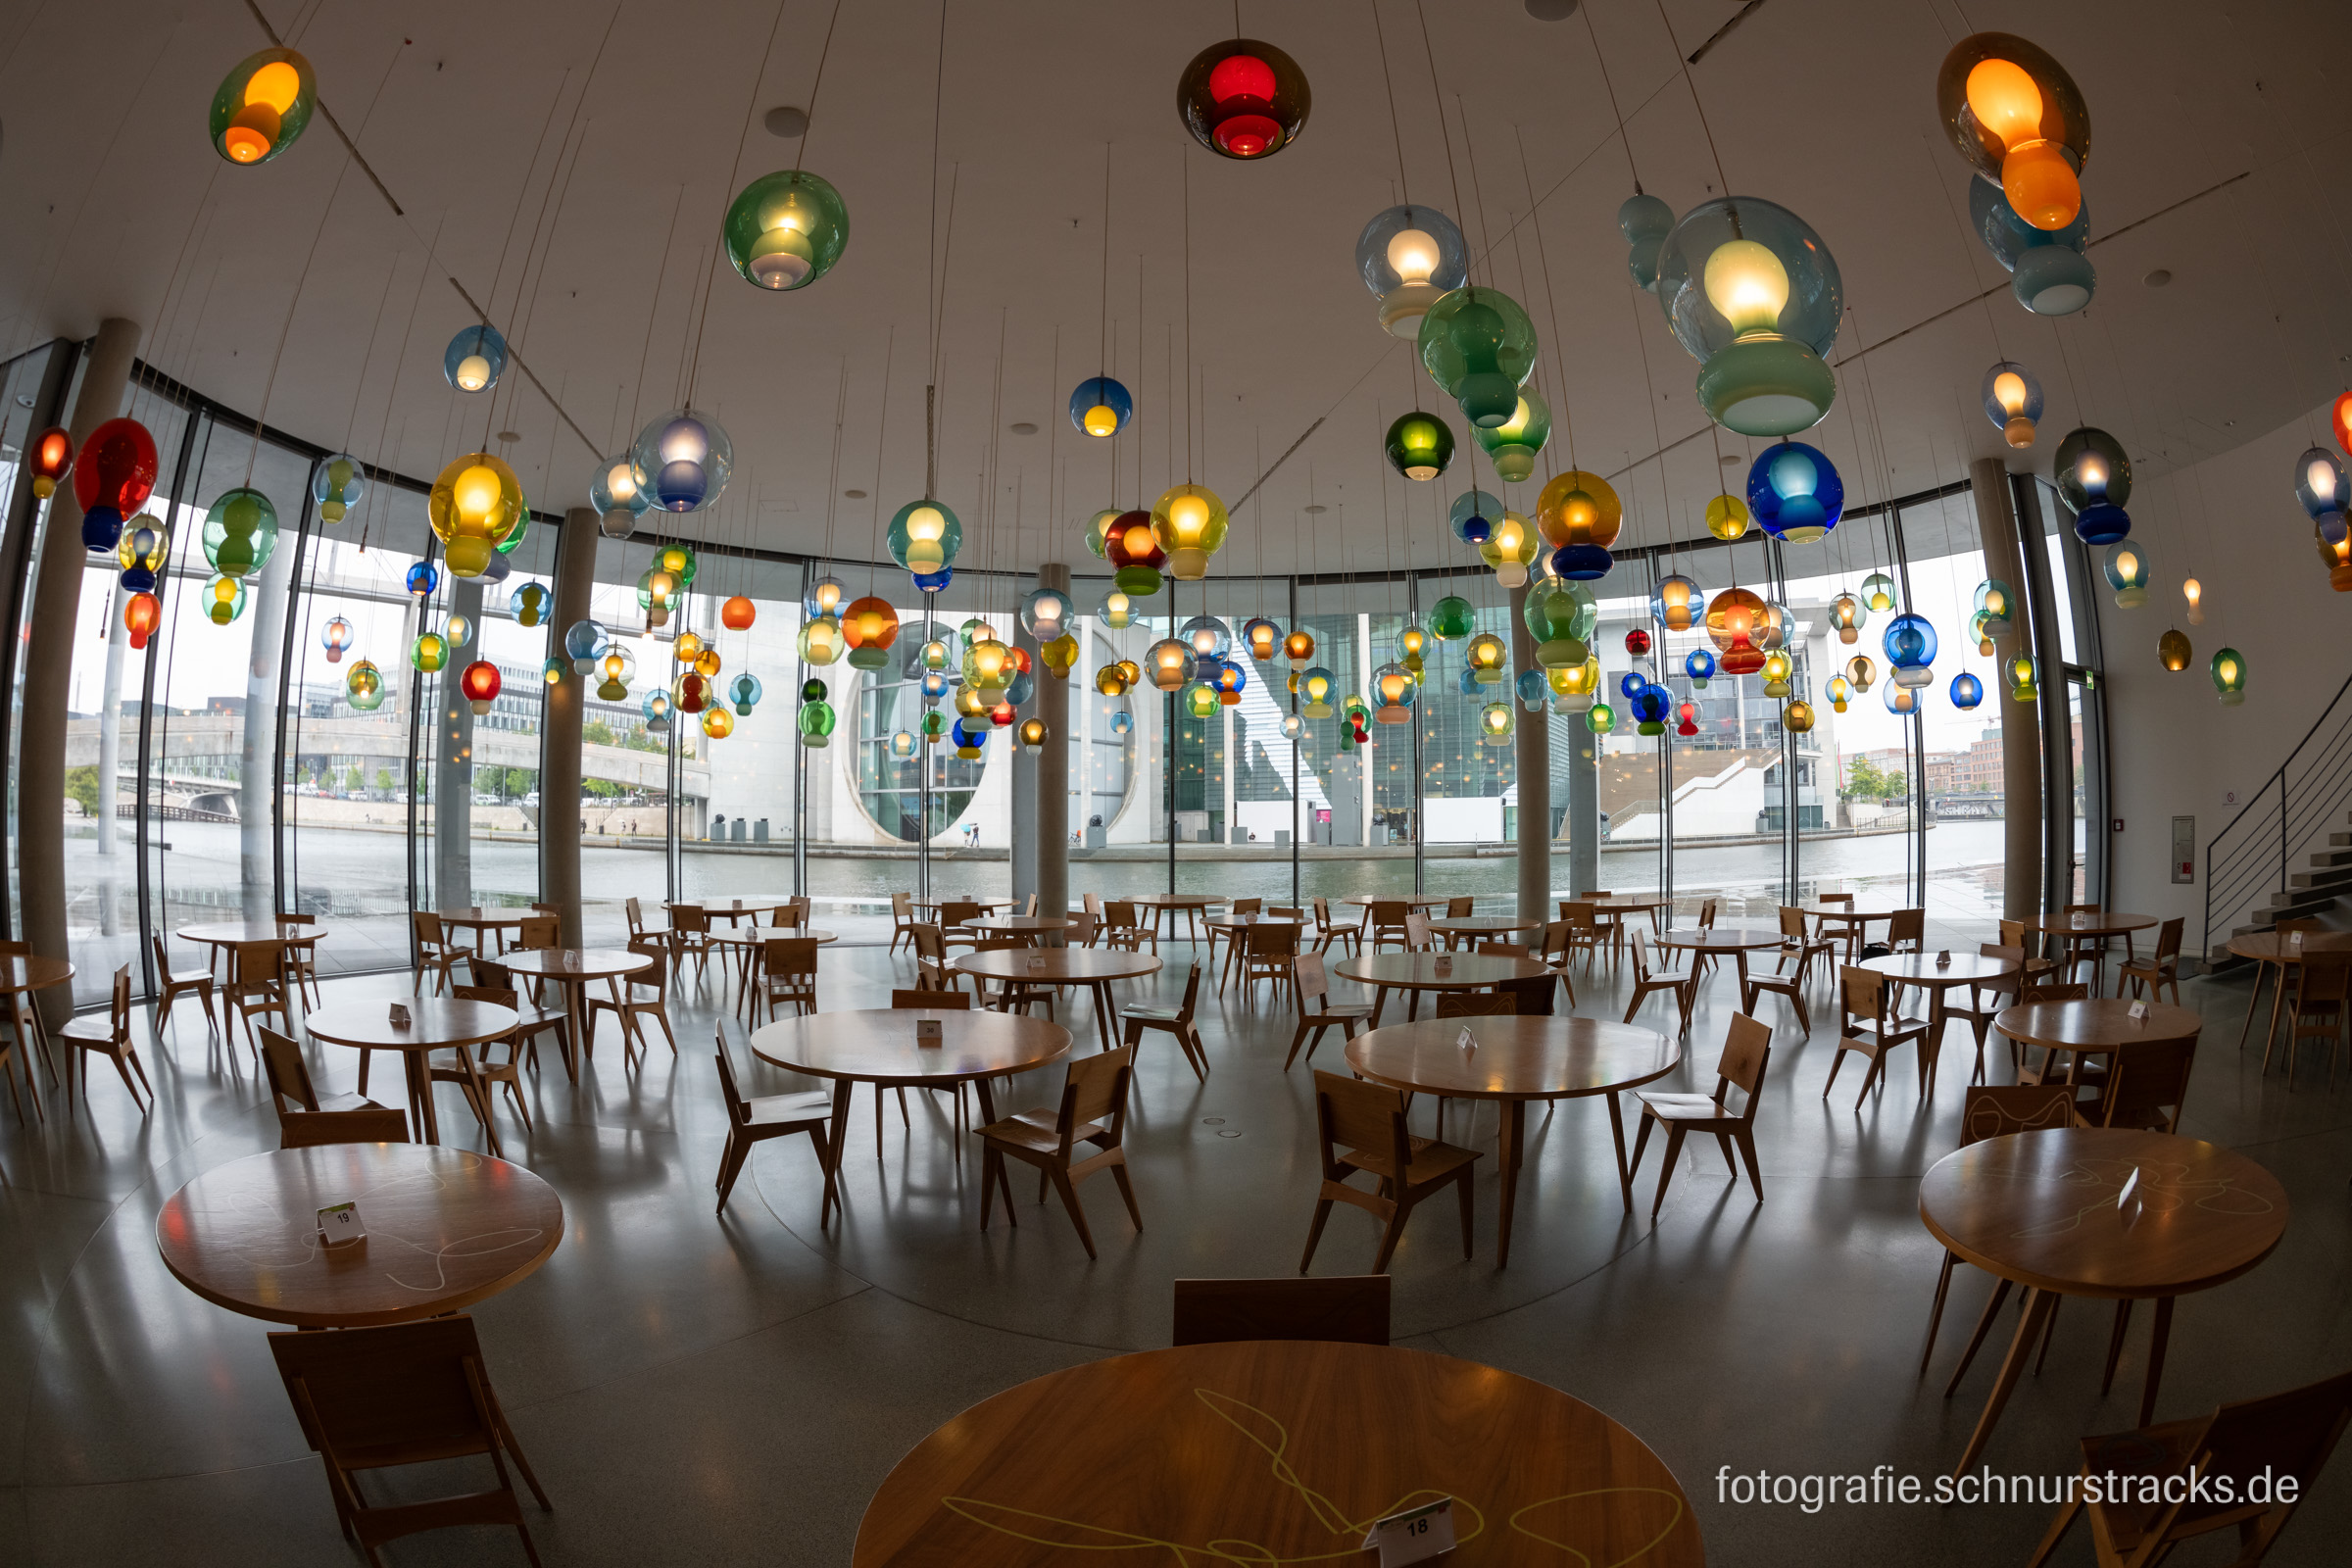 Abgeordnetenrestaurant im Paul-Löbe-Haus mit der Rauminstallation „untitled restaurant“ aus Kugellampen von Jorge Pardo